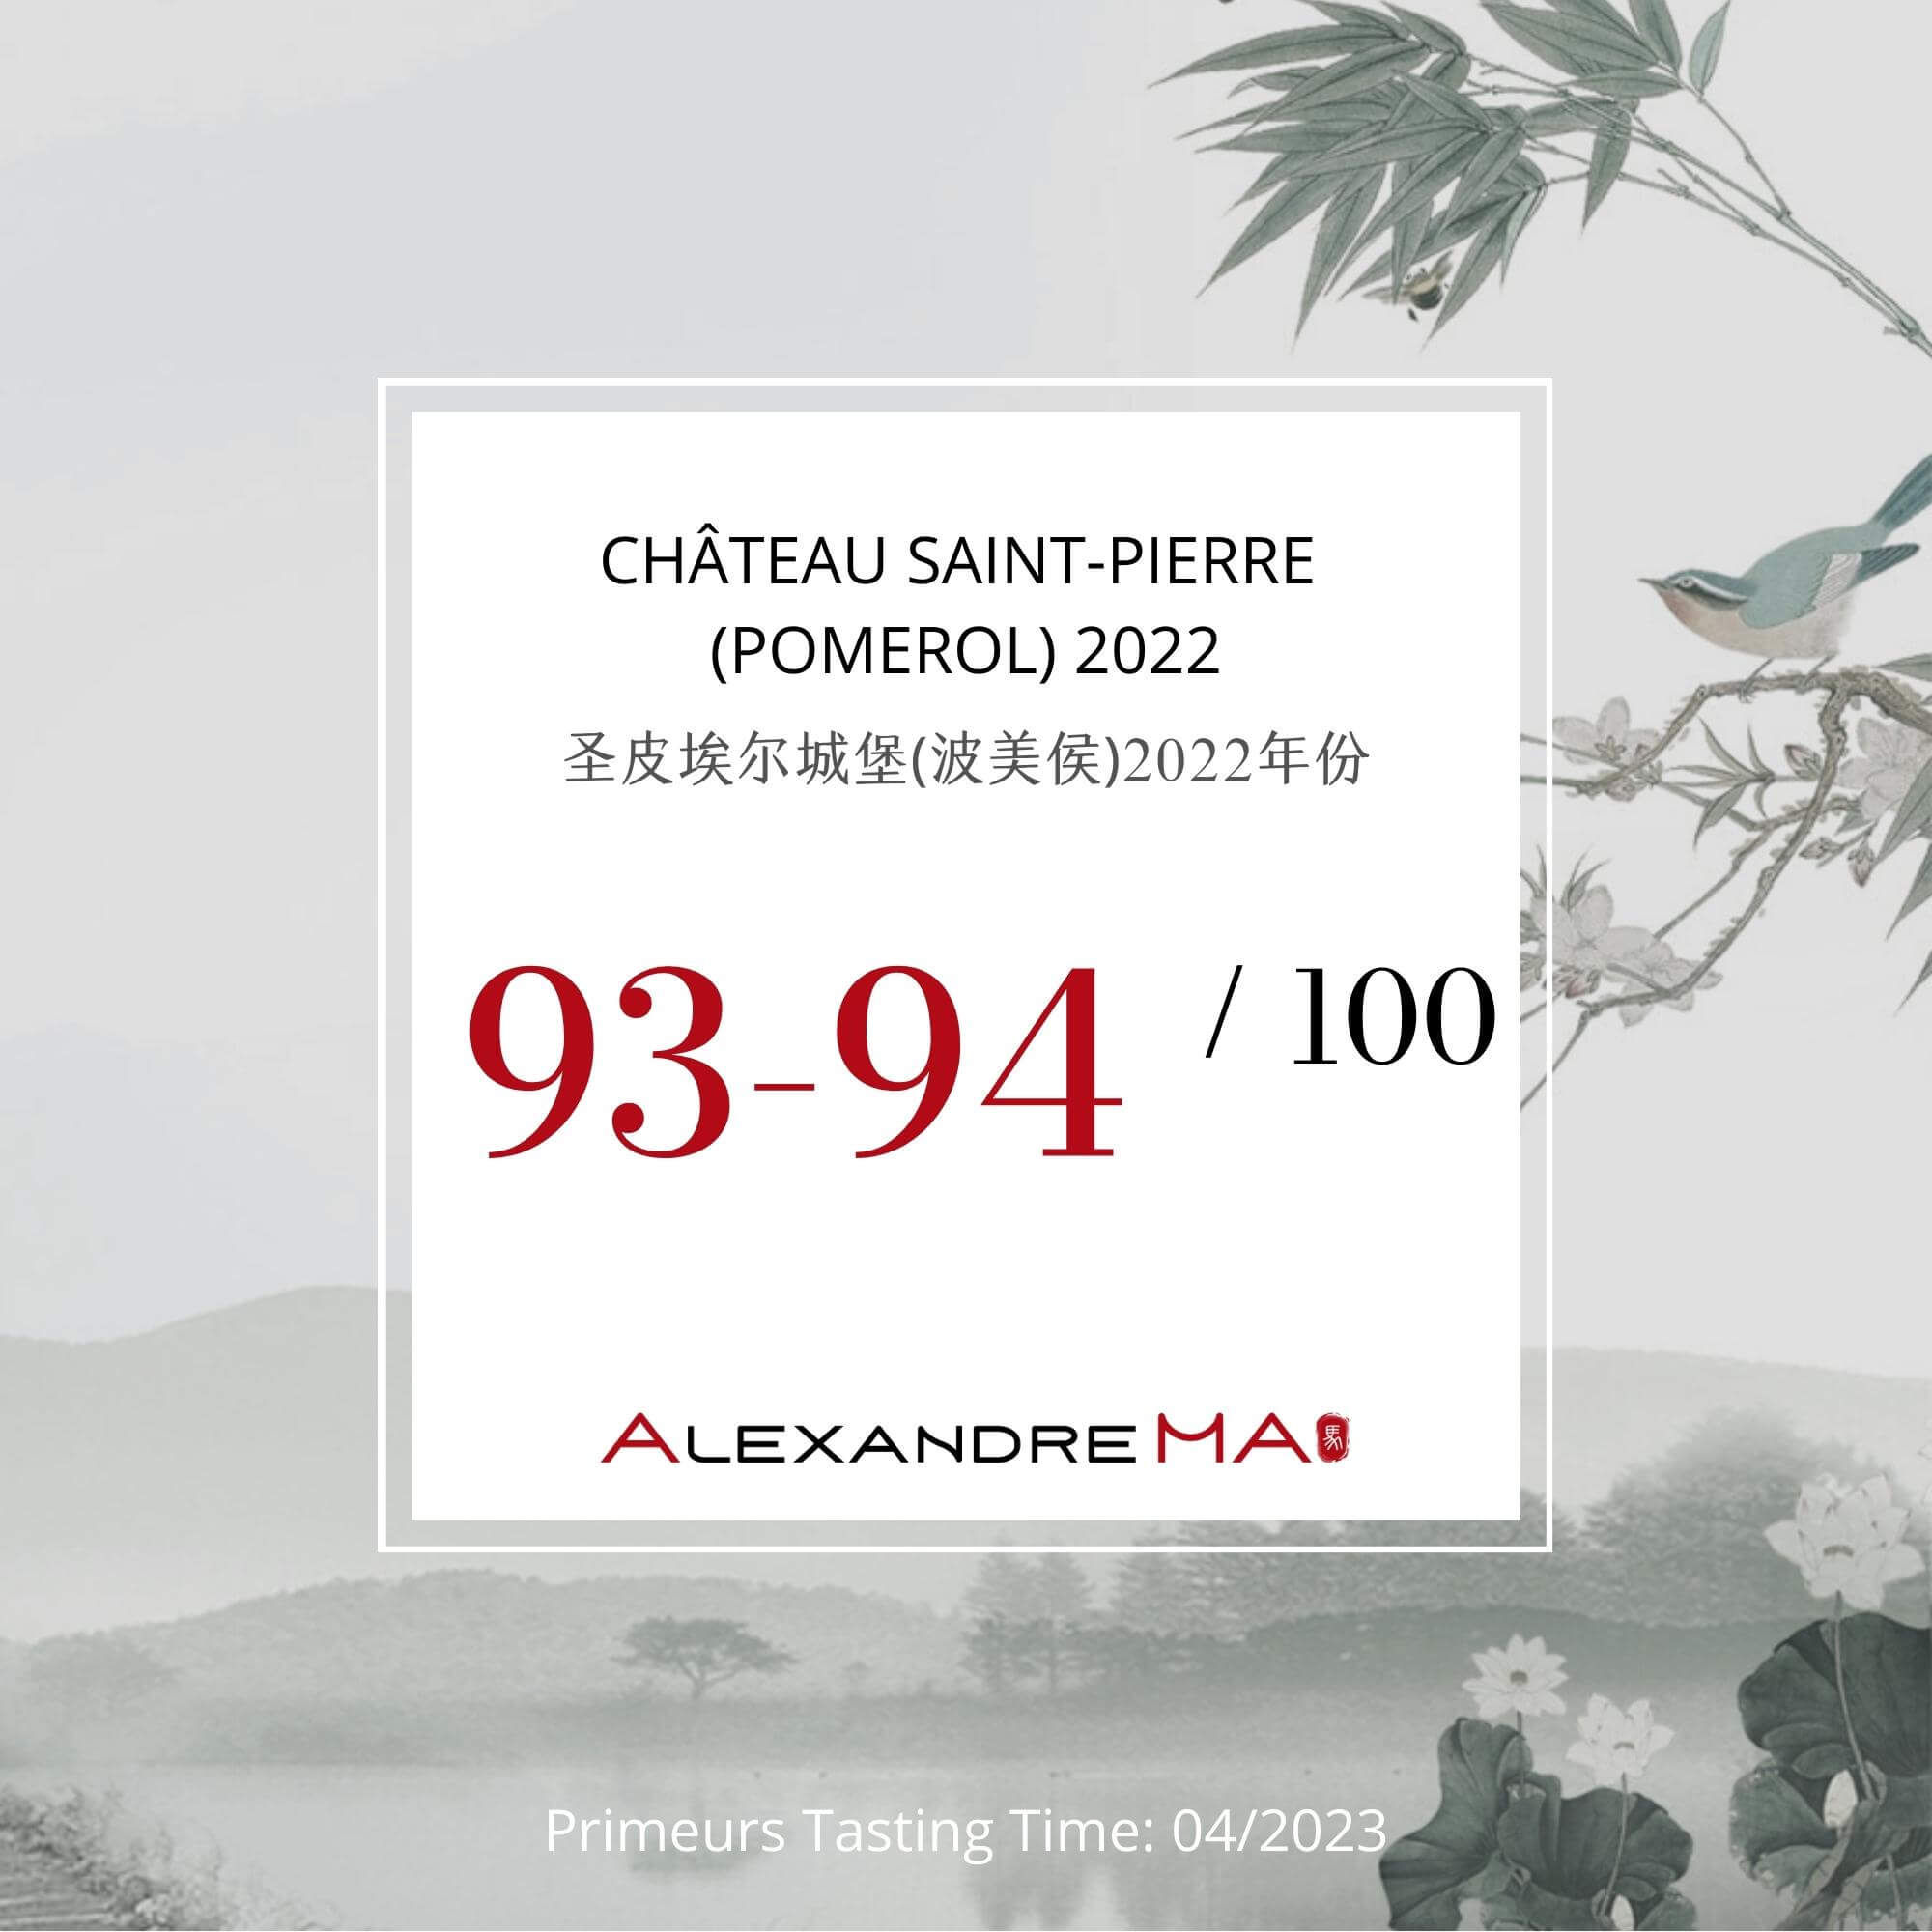 Château Saint-Pierre (Pomerol) 2022 Primeurs - Alexandre MA